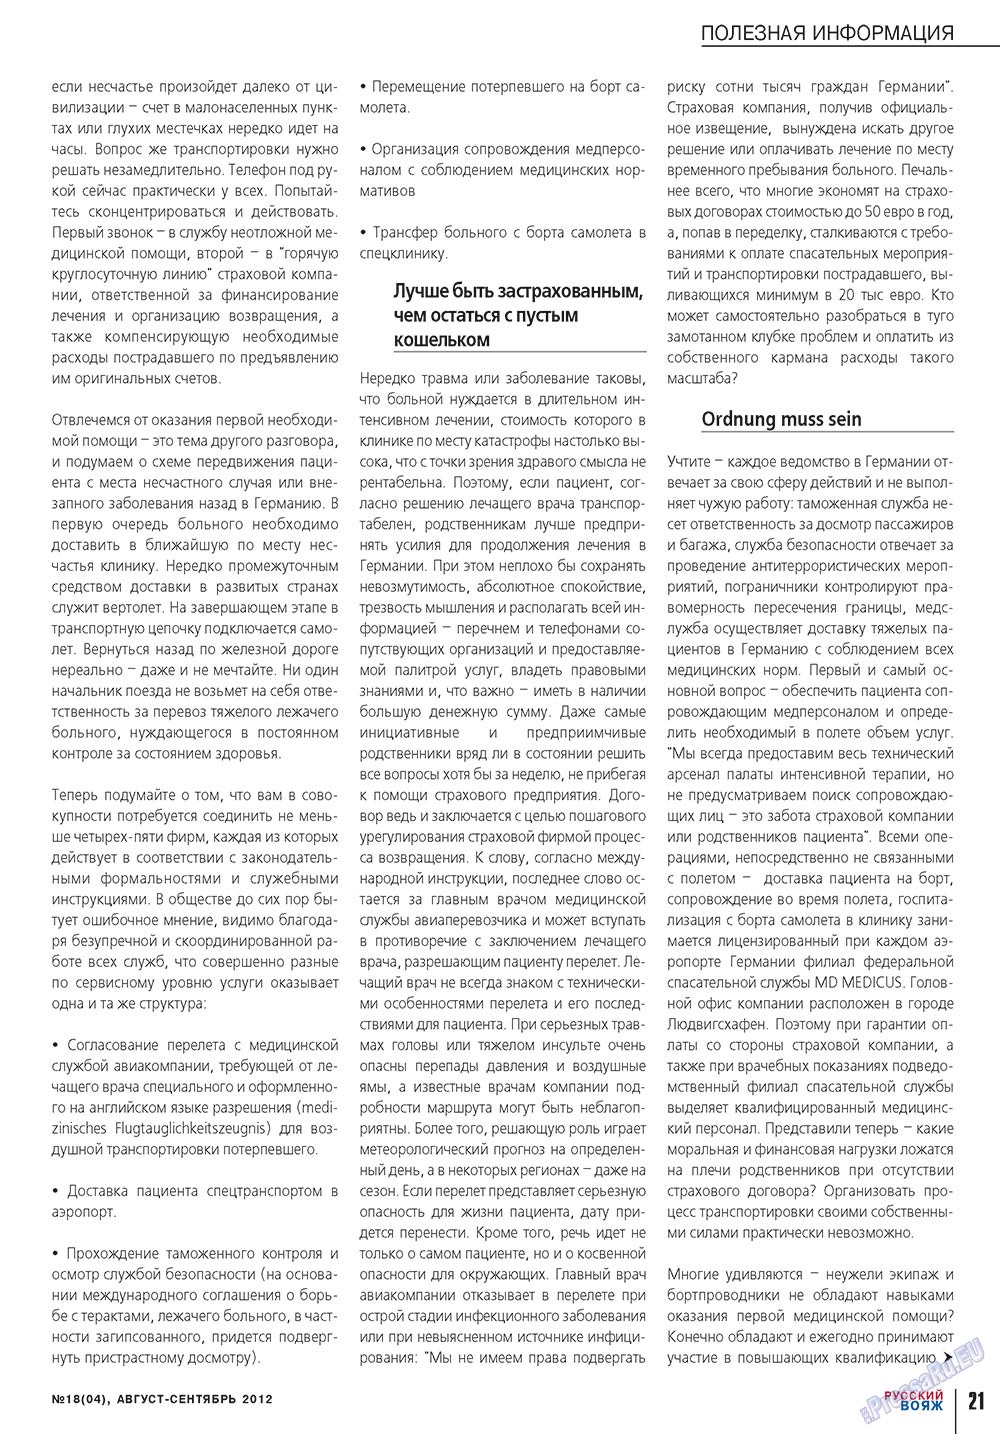 Russkiy Wojazh (Zeitschrift). 2012 Jahr, Ausgabe 18, Seite 21